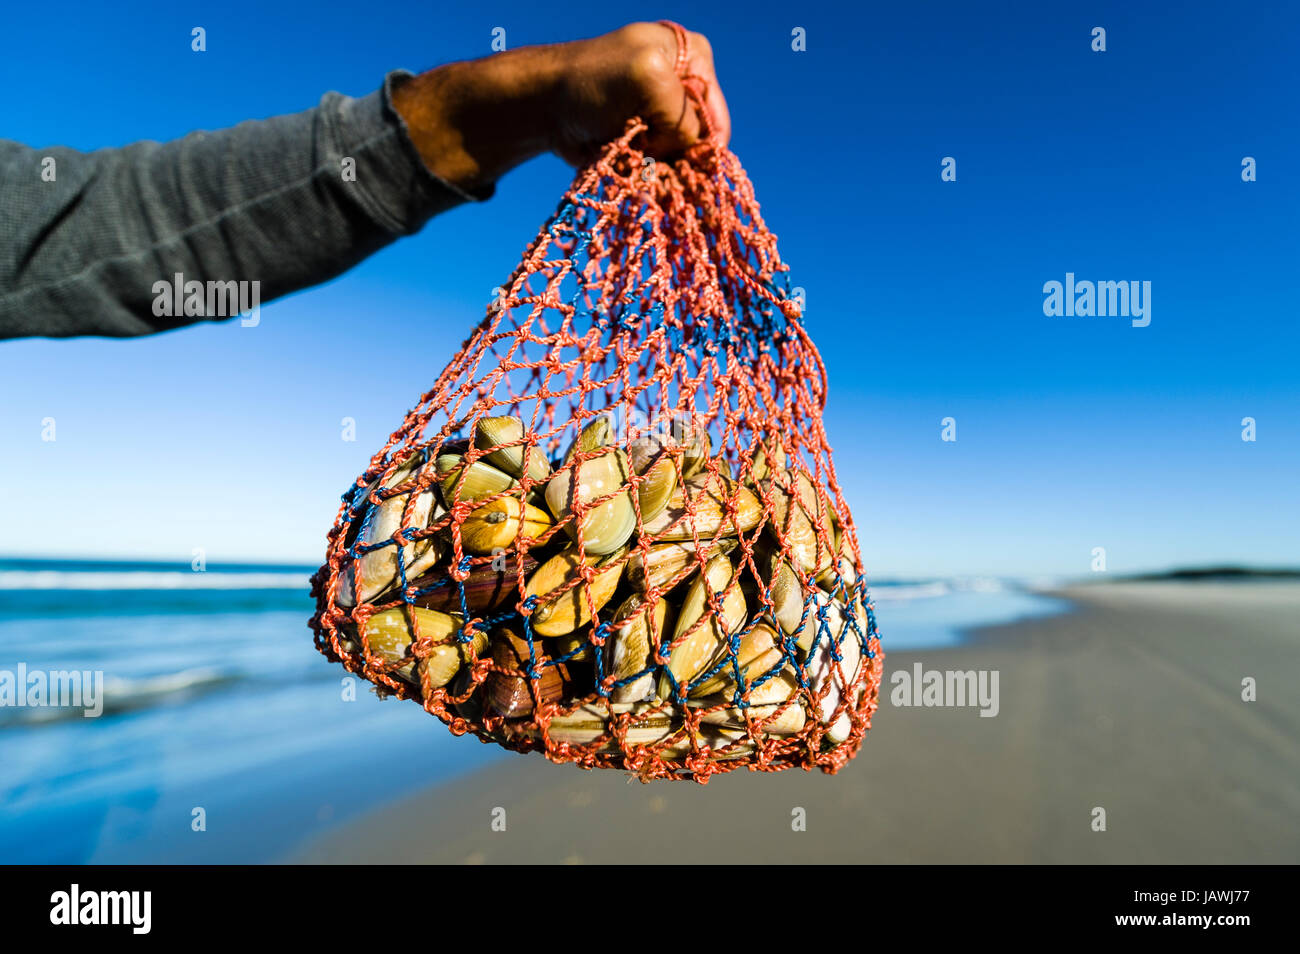 Una bolsa tejida de llevar bi-válvula conchas llamado pipi cosechadas en una playa. Foto de stock